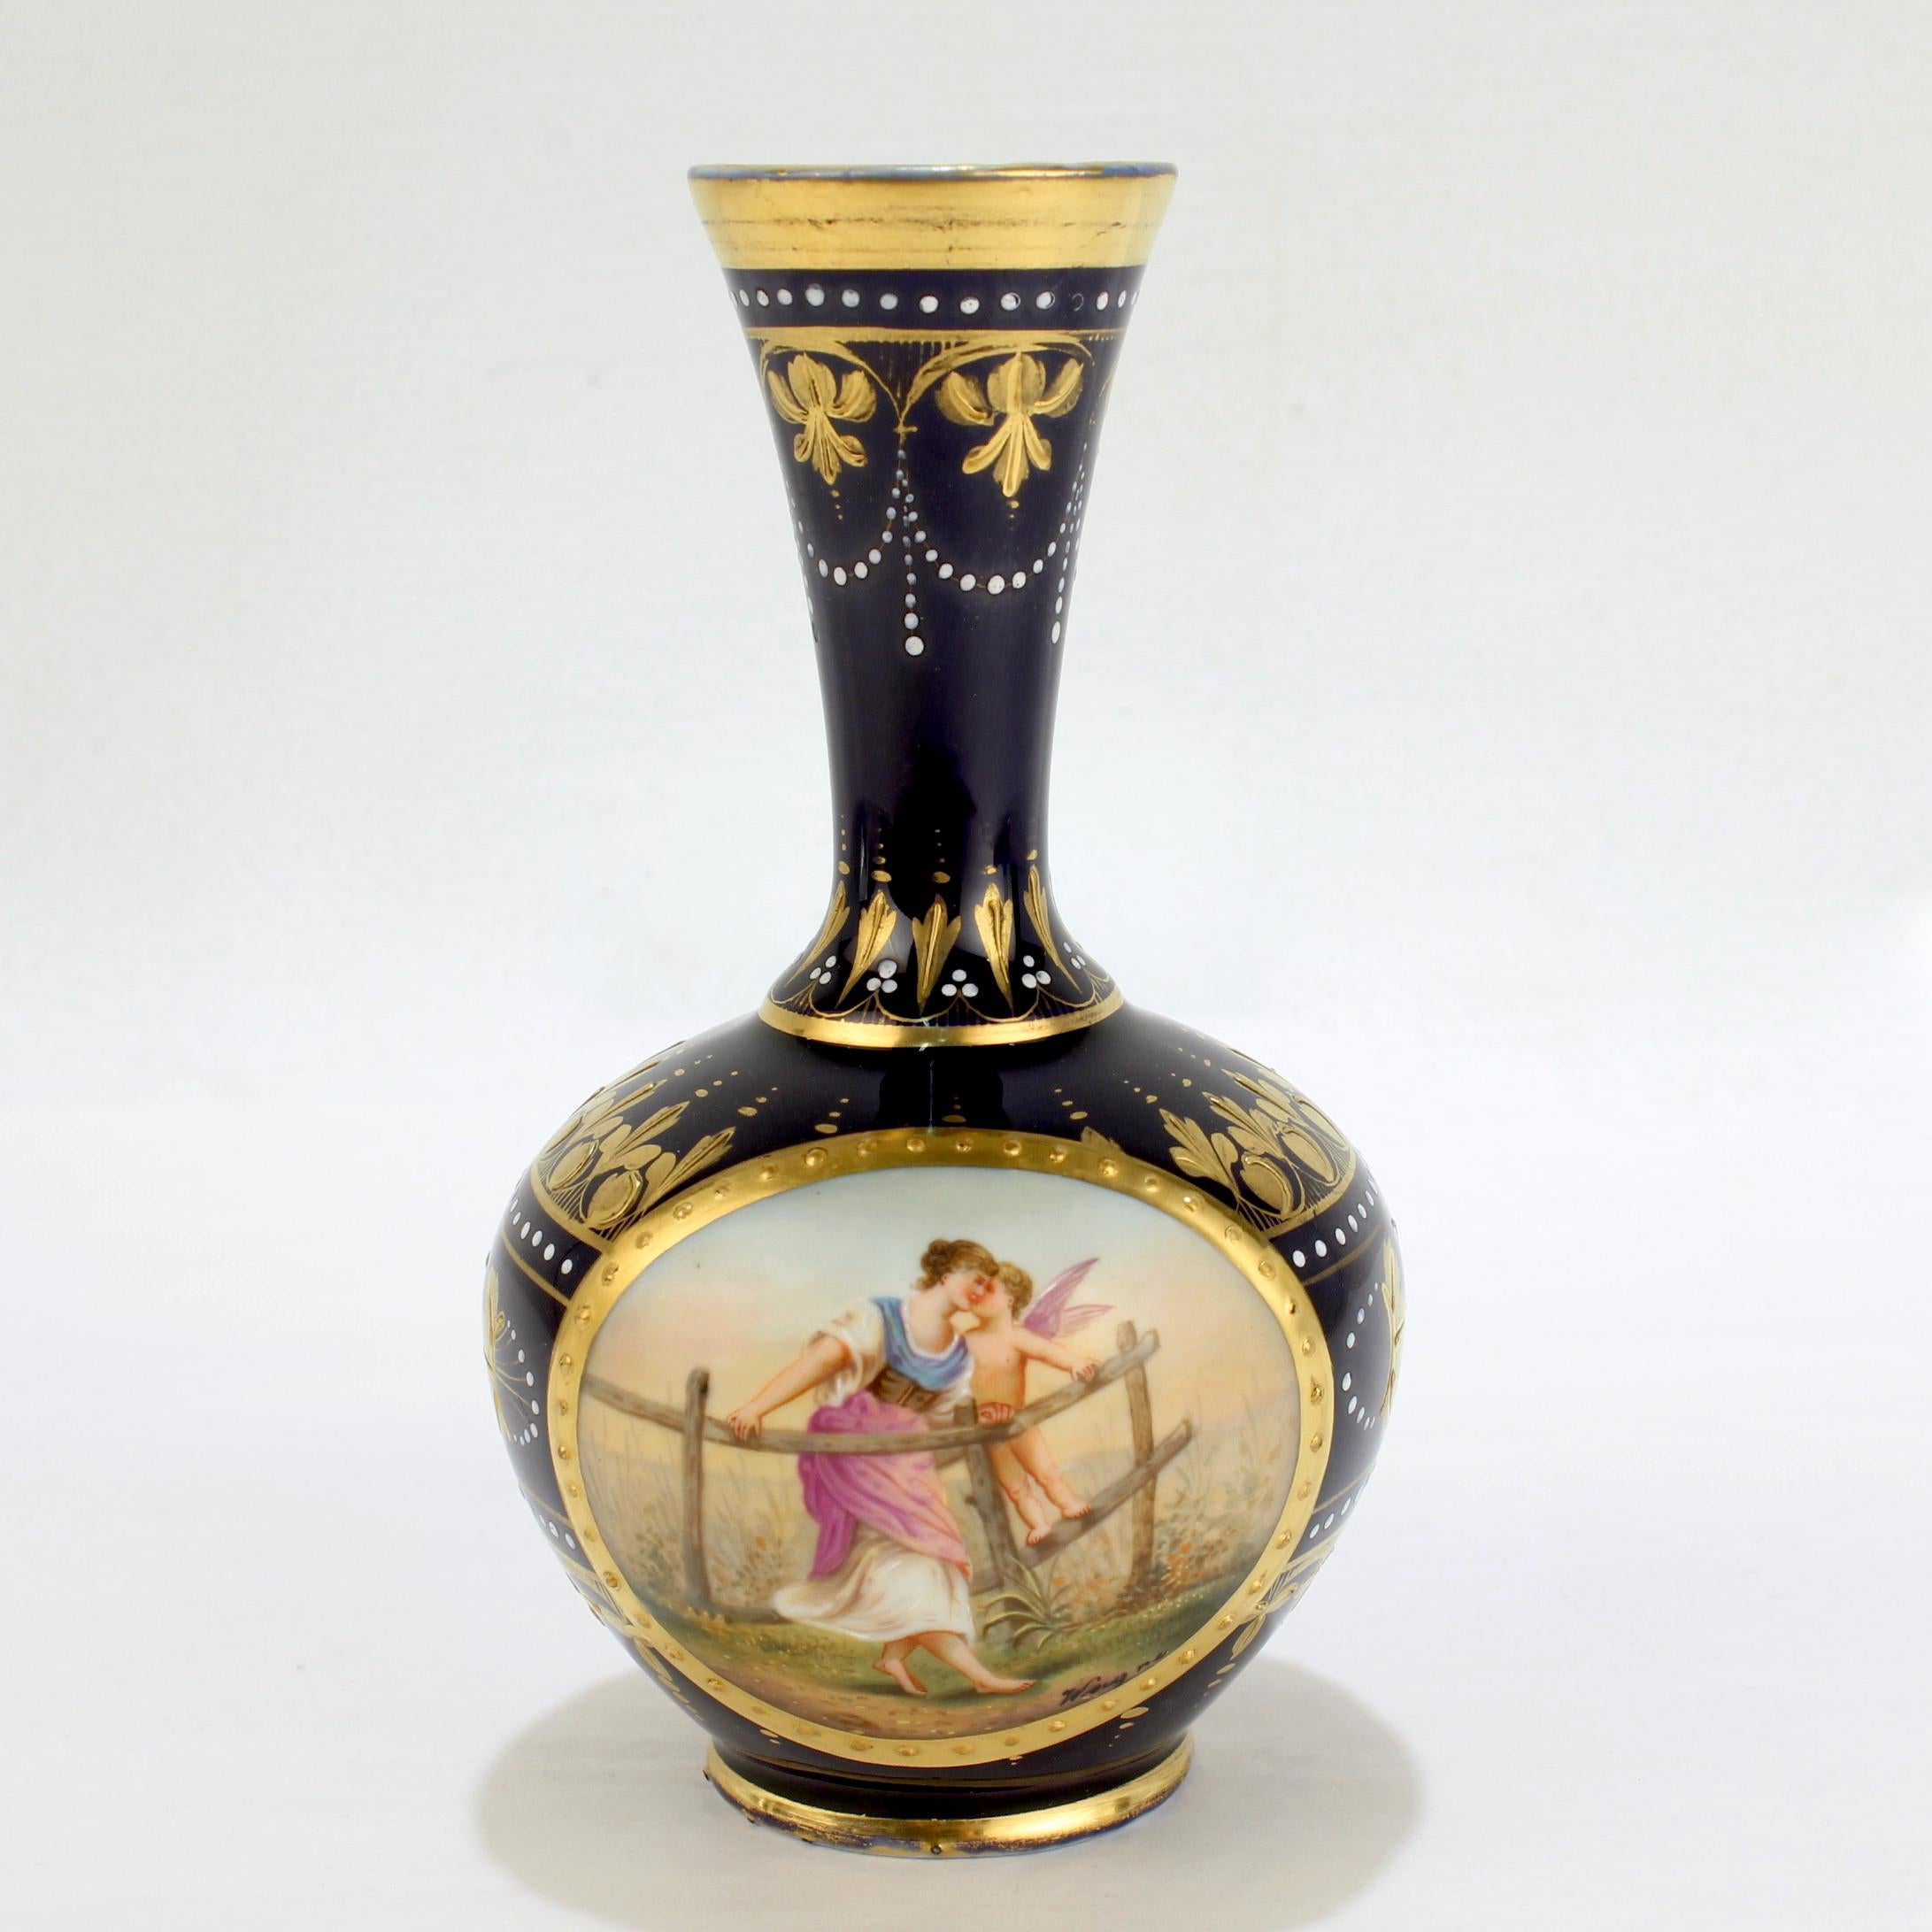 Un vase ancien signé en porcelaine de style Royal Vienna.

Intitulé : 